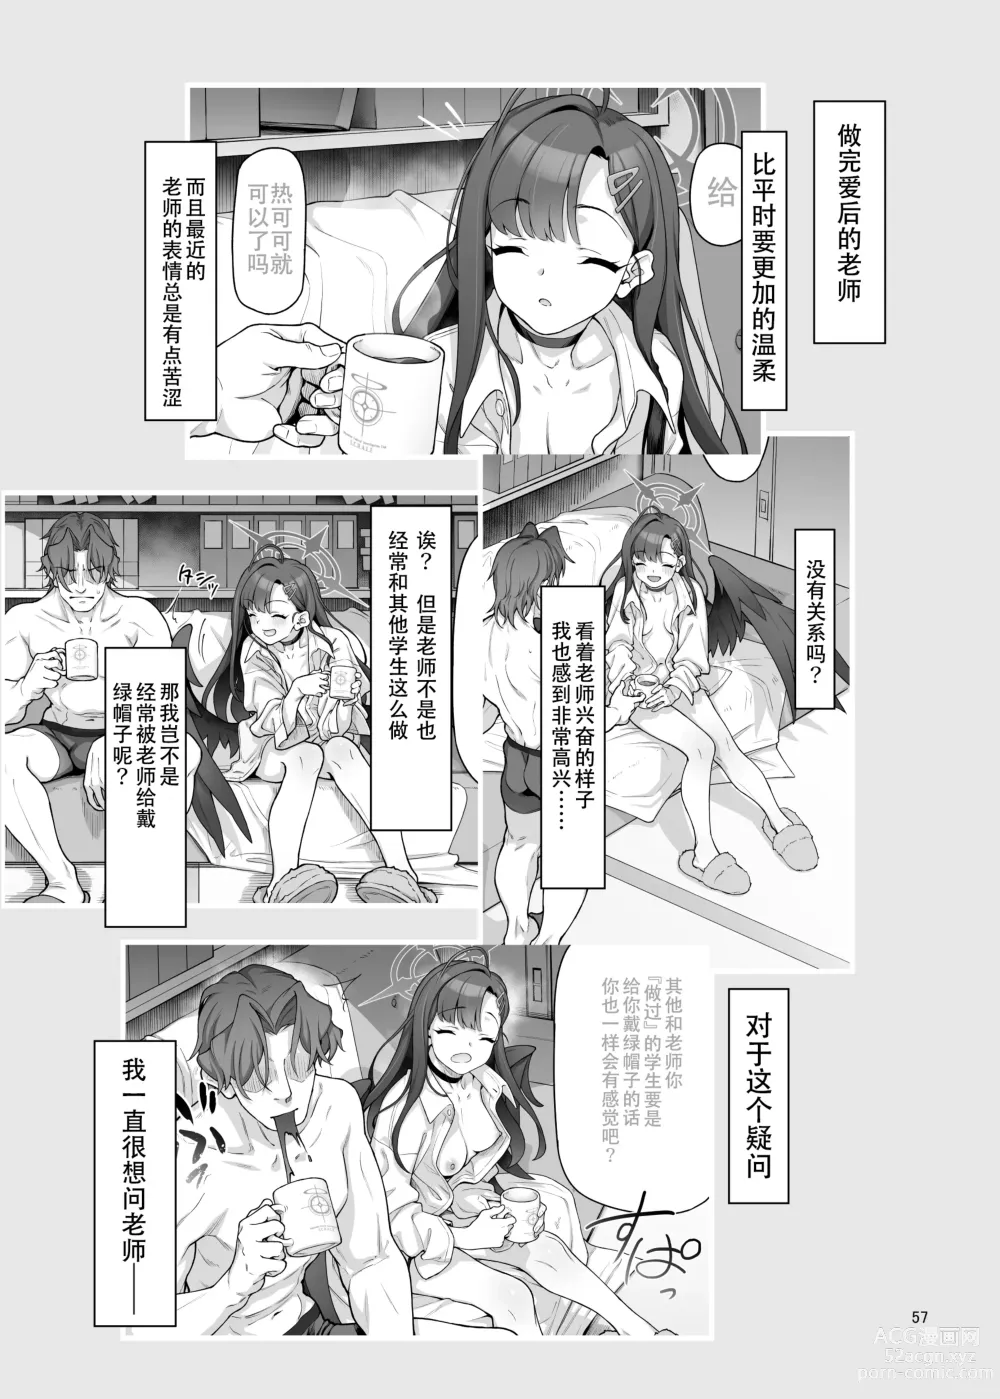 Page 58 of doujinshi Nakamasa Ichika wa Sensei no Tame nara